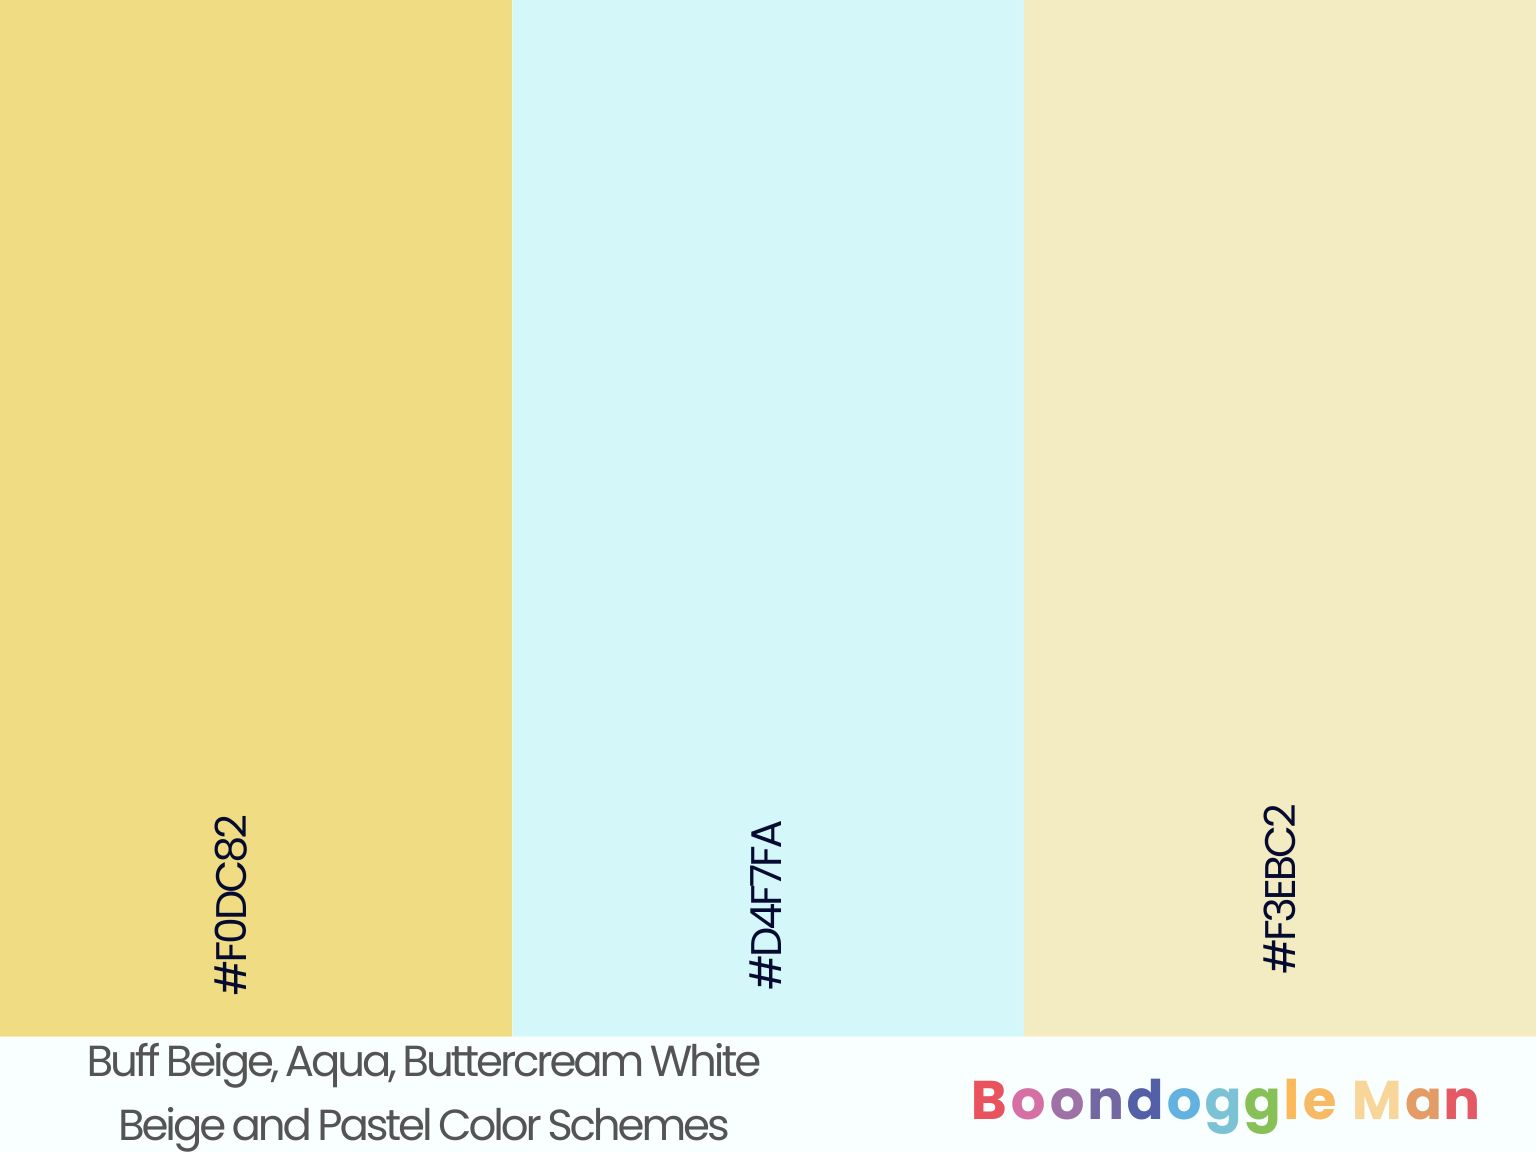 Buff Beige, Aqua, Buttercream White